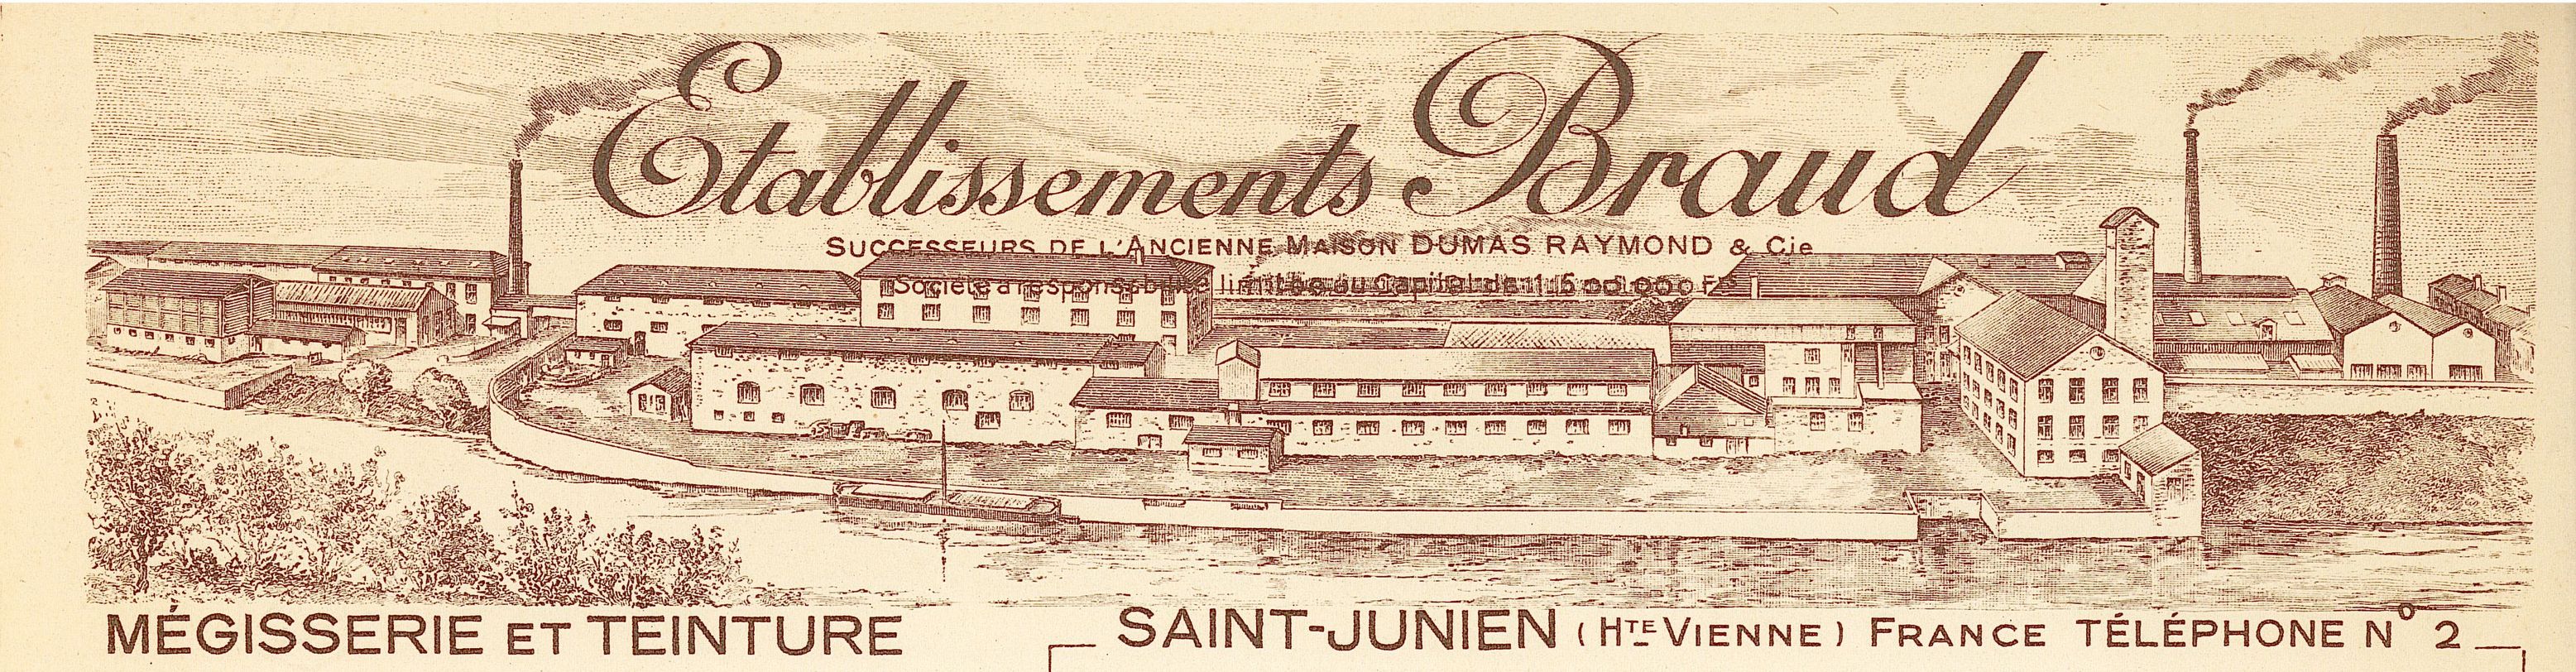 En-tête des établissement Braud, successeurs de Dumas et Raymond.